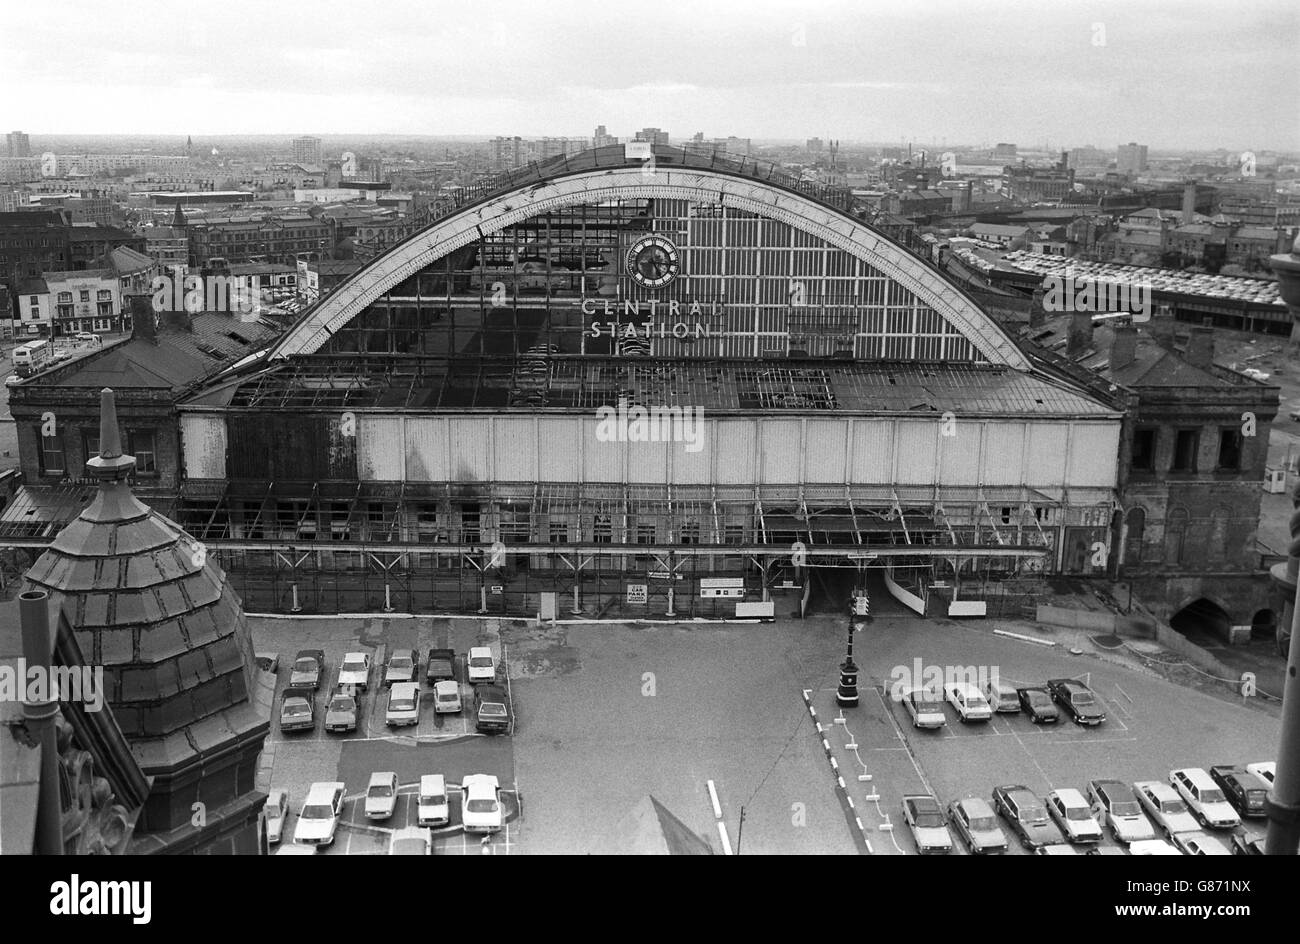 La gare centrale désutilisée de Manchester, qui doit être transformée en un hall d'exposition, un hôtel et un complexe de loisirs. Banque D'Images